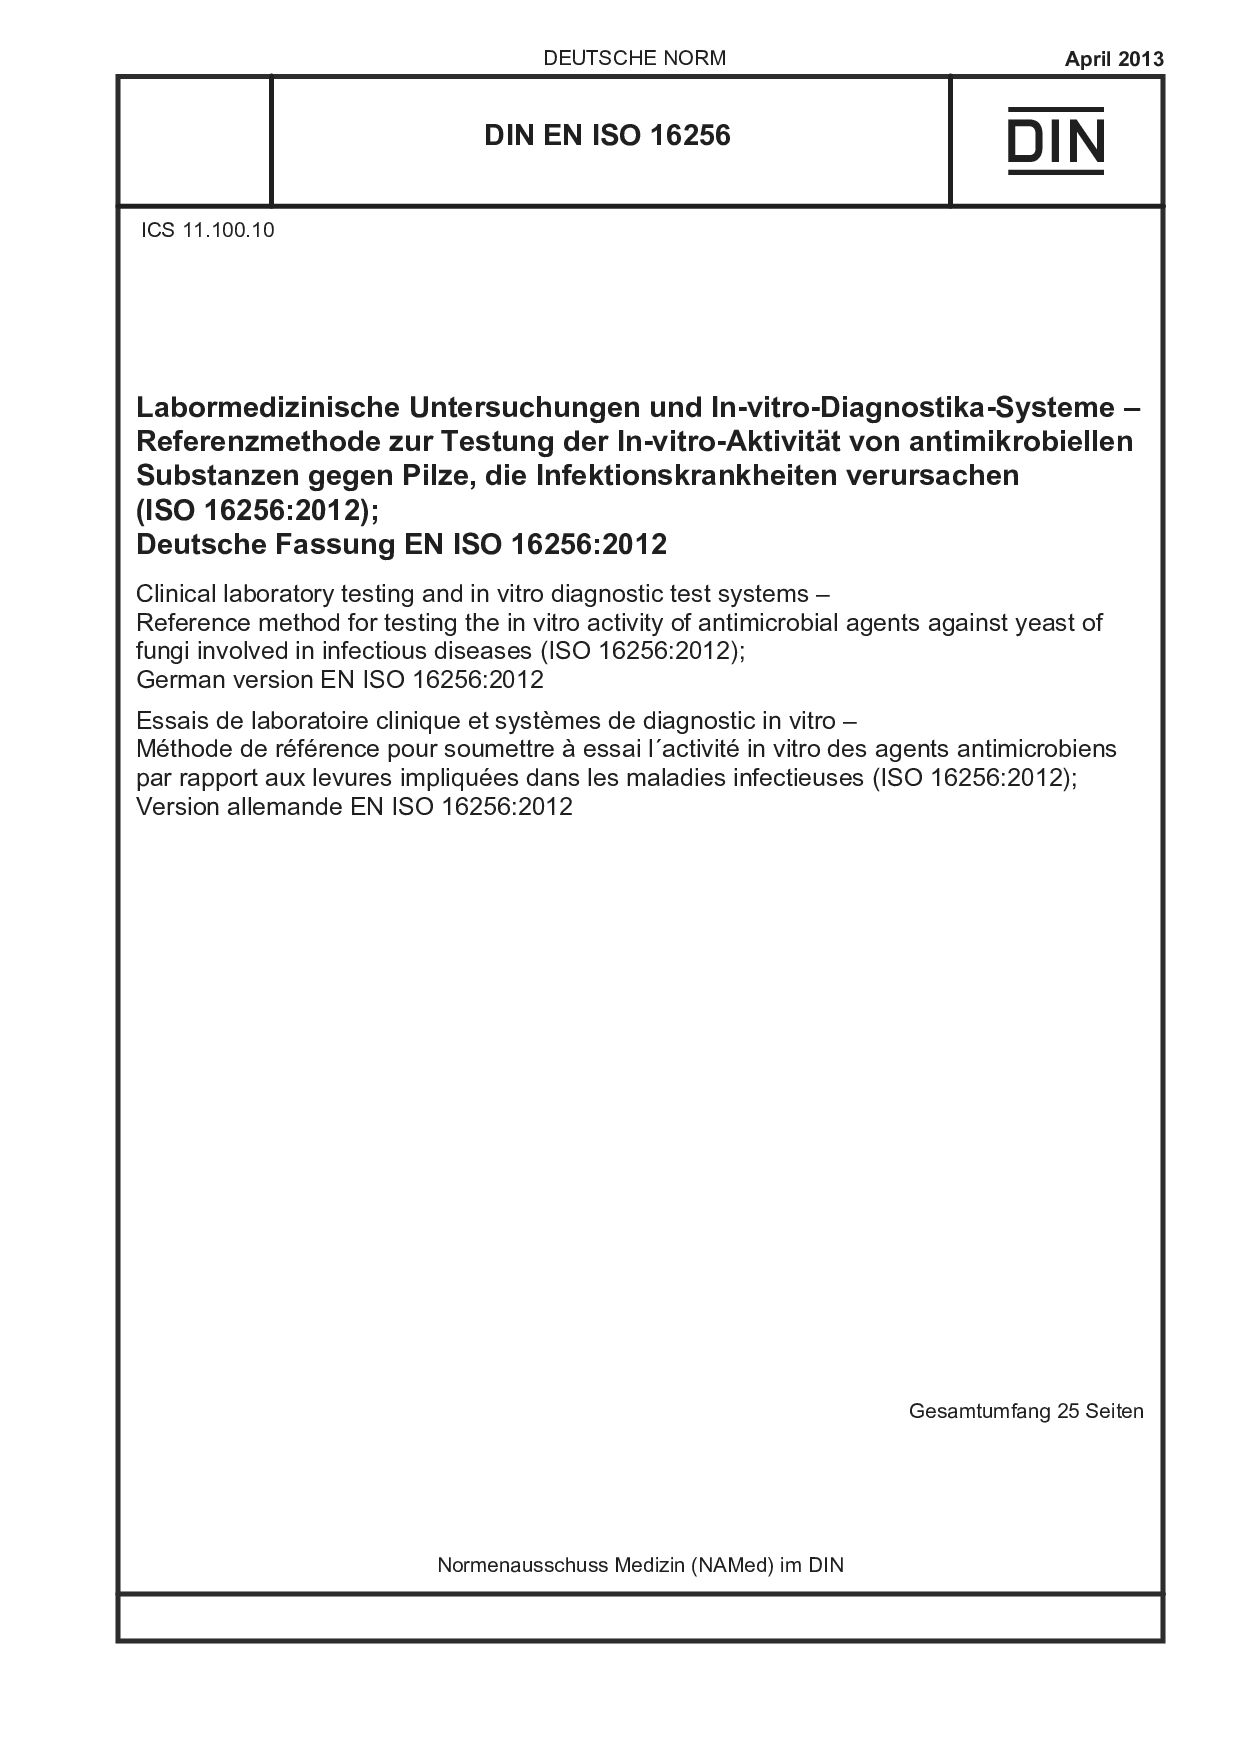 DIN EN ISO 16256:2013